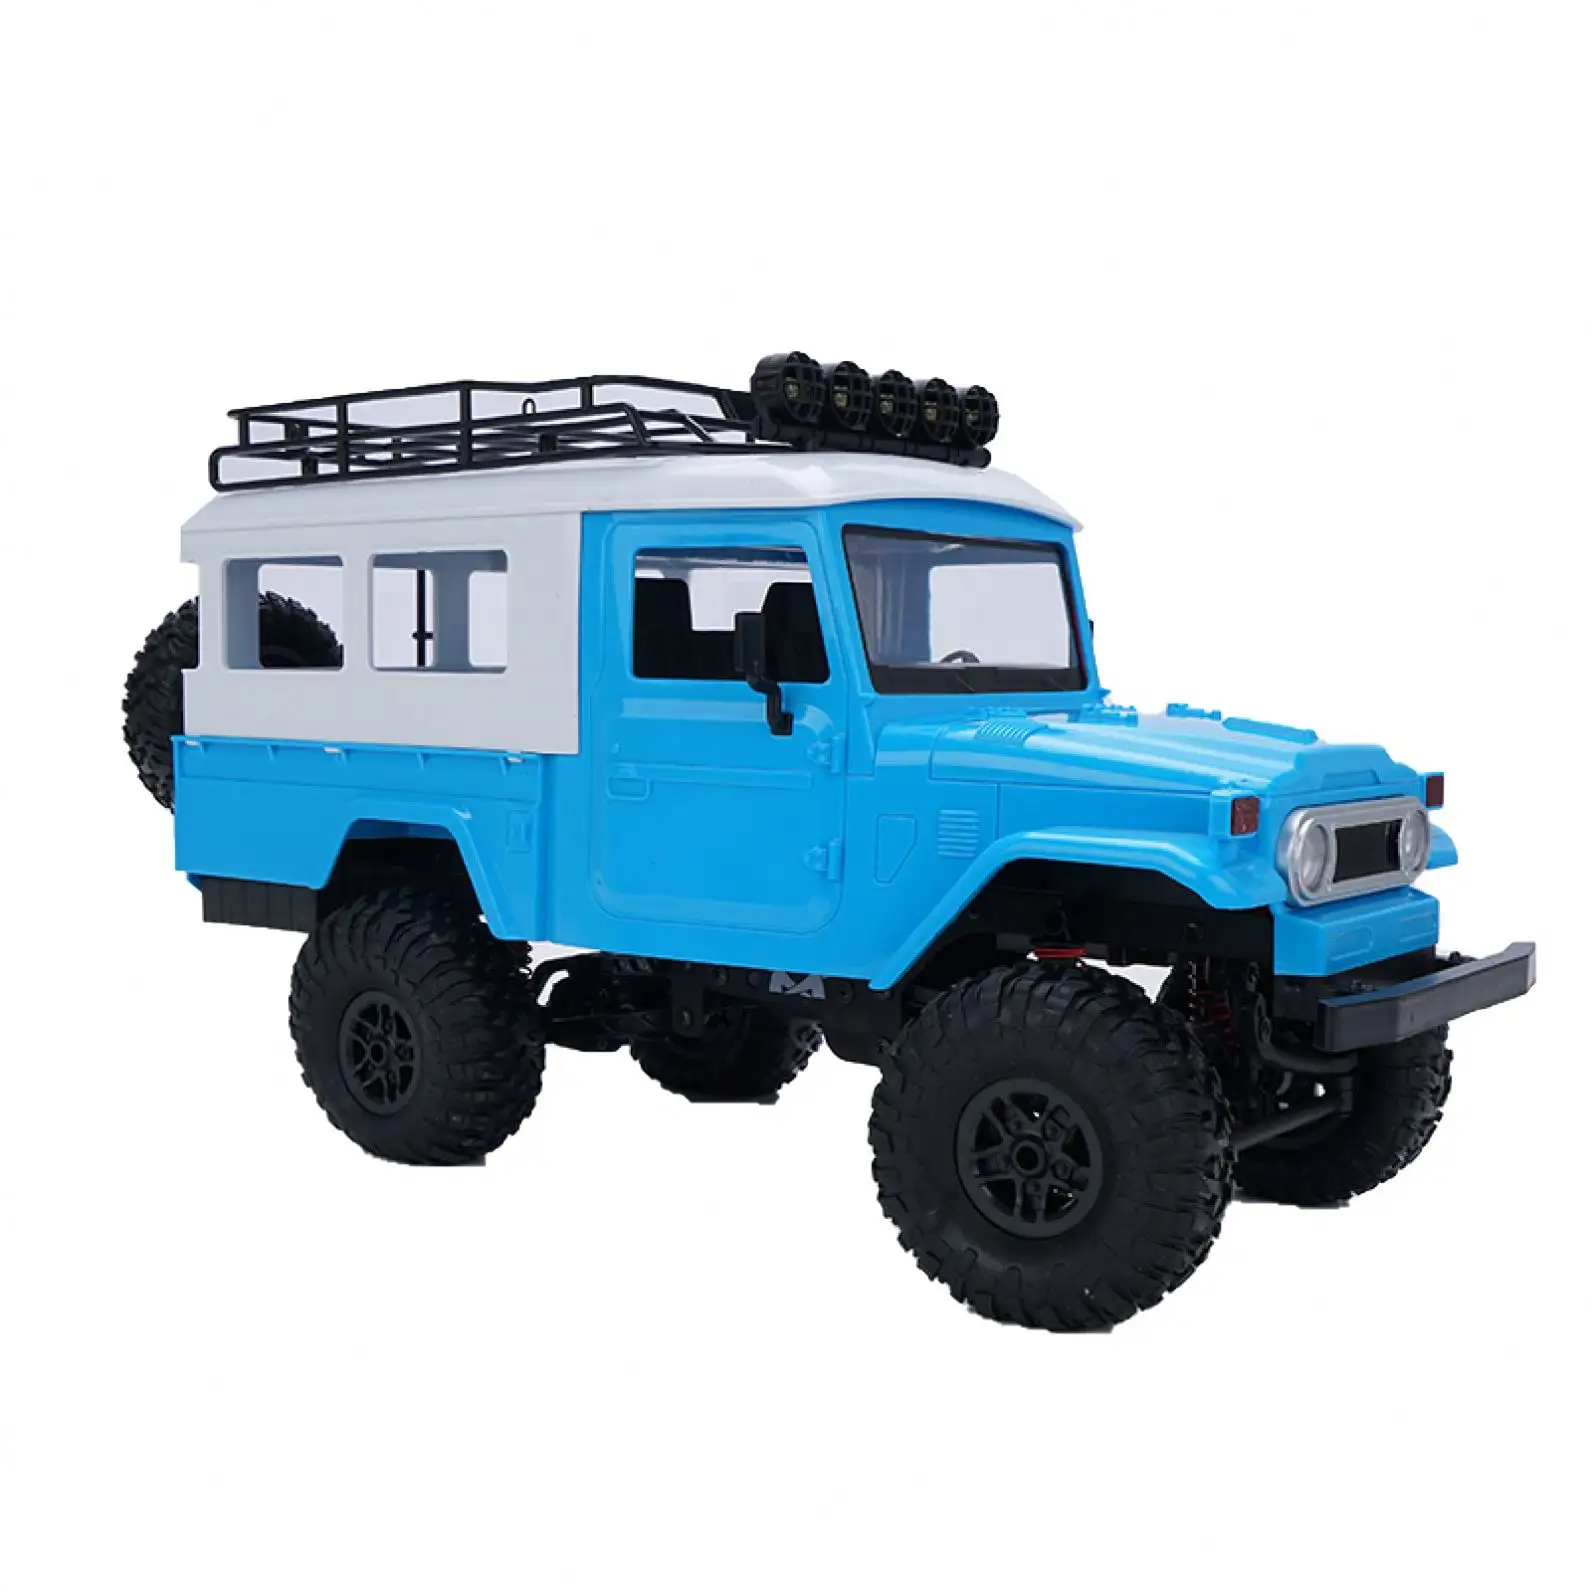 MN-40 RC оптовая продажа человек по бездорожью грузовик дистанционное управление игрушка